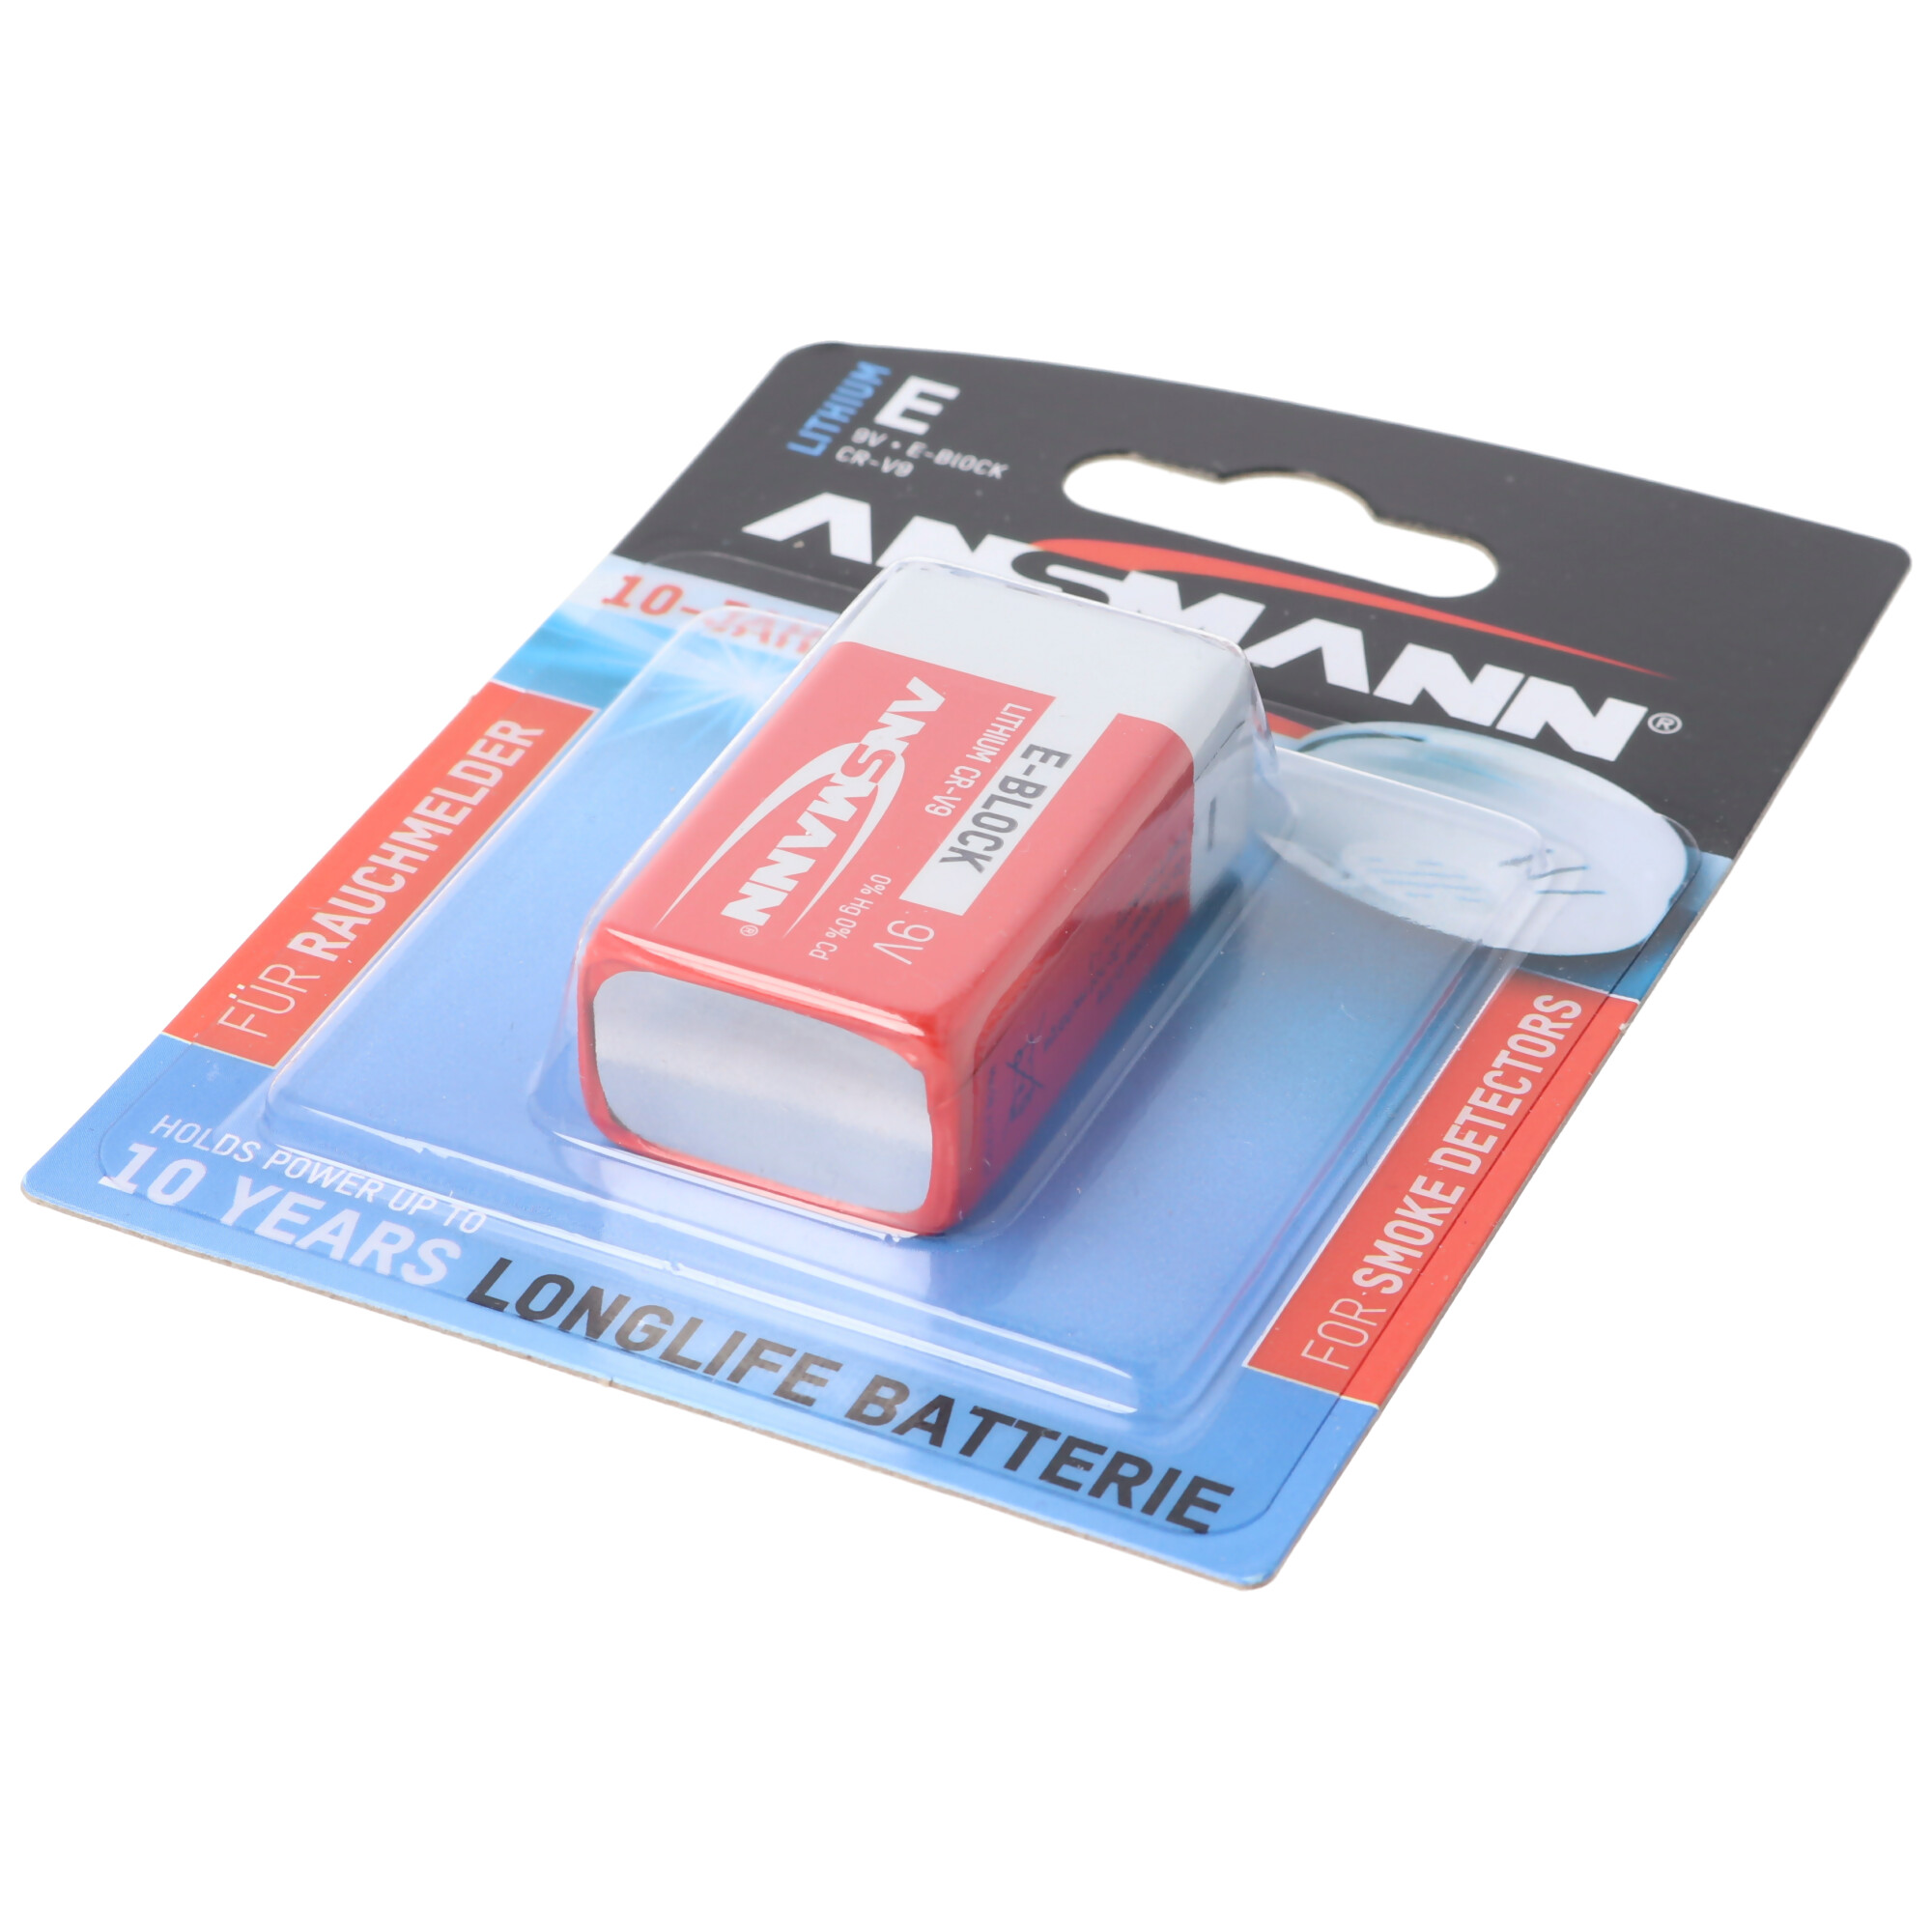 Lithium Batterie für Rauchmelder 9V E-Block speziell für Rauchwarnmelder